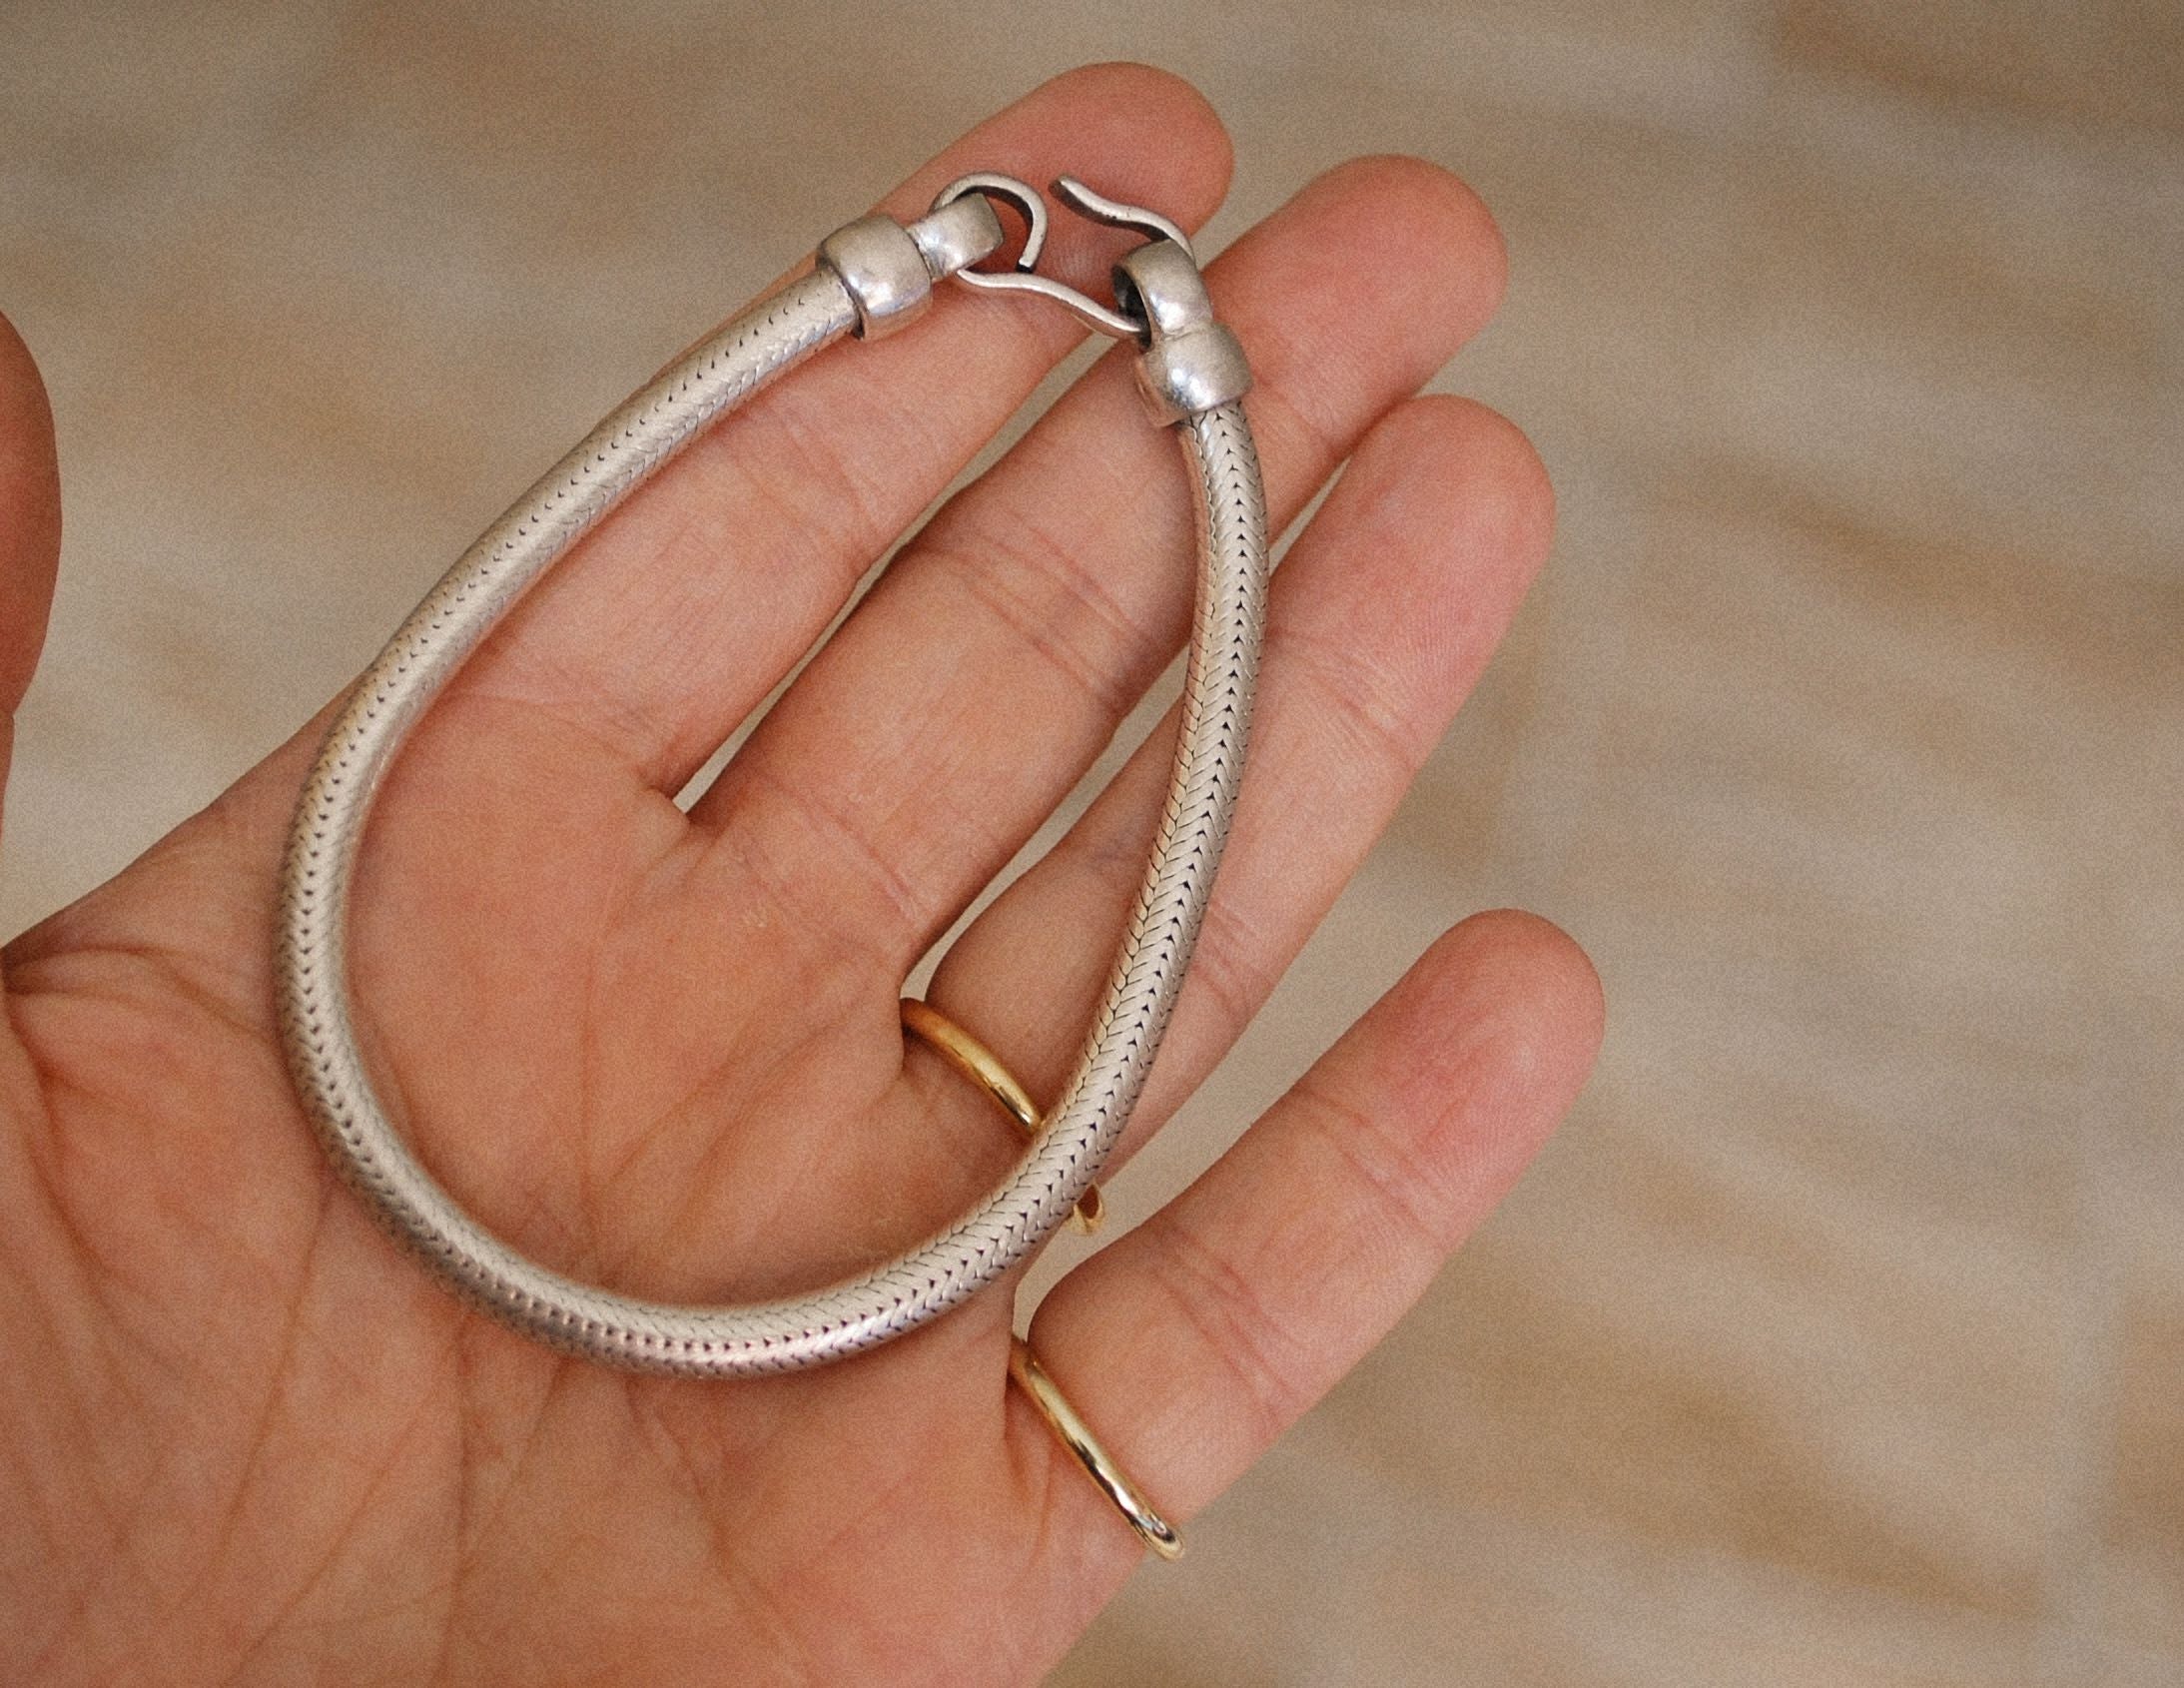 Rajasthan Snake Chain Bracelet